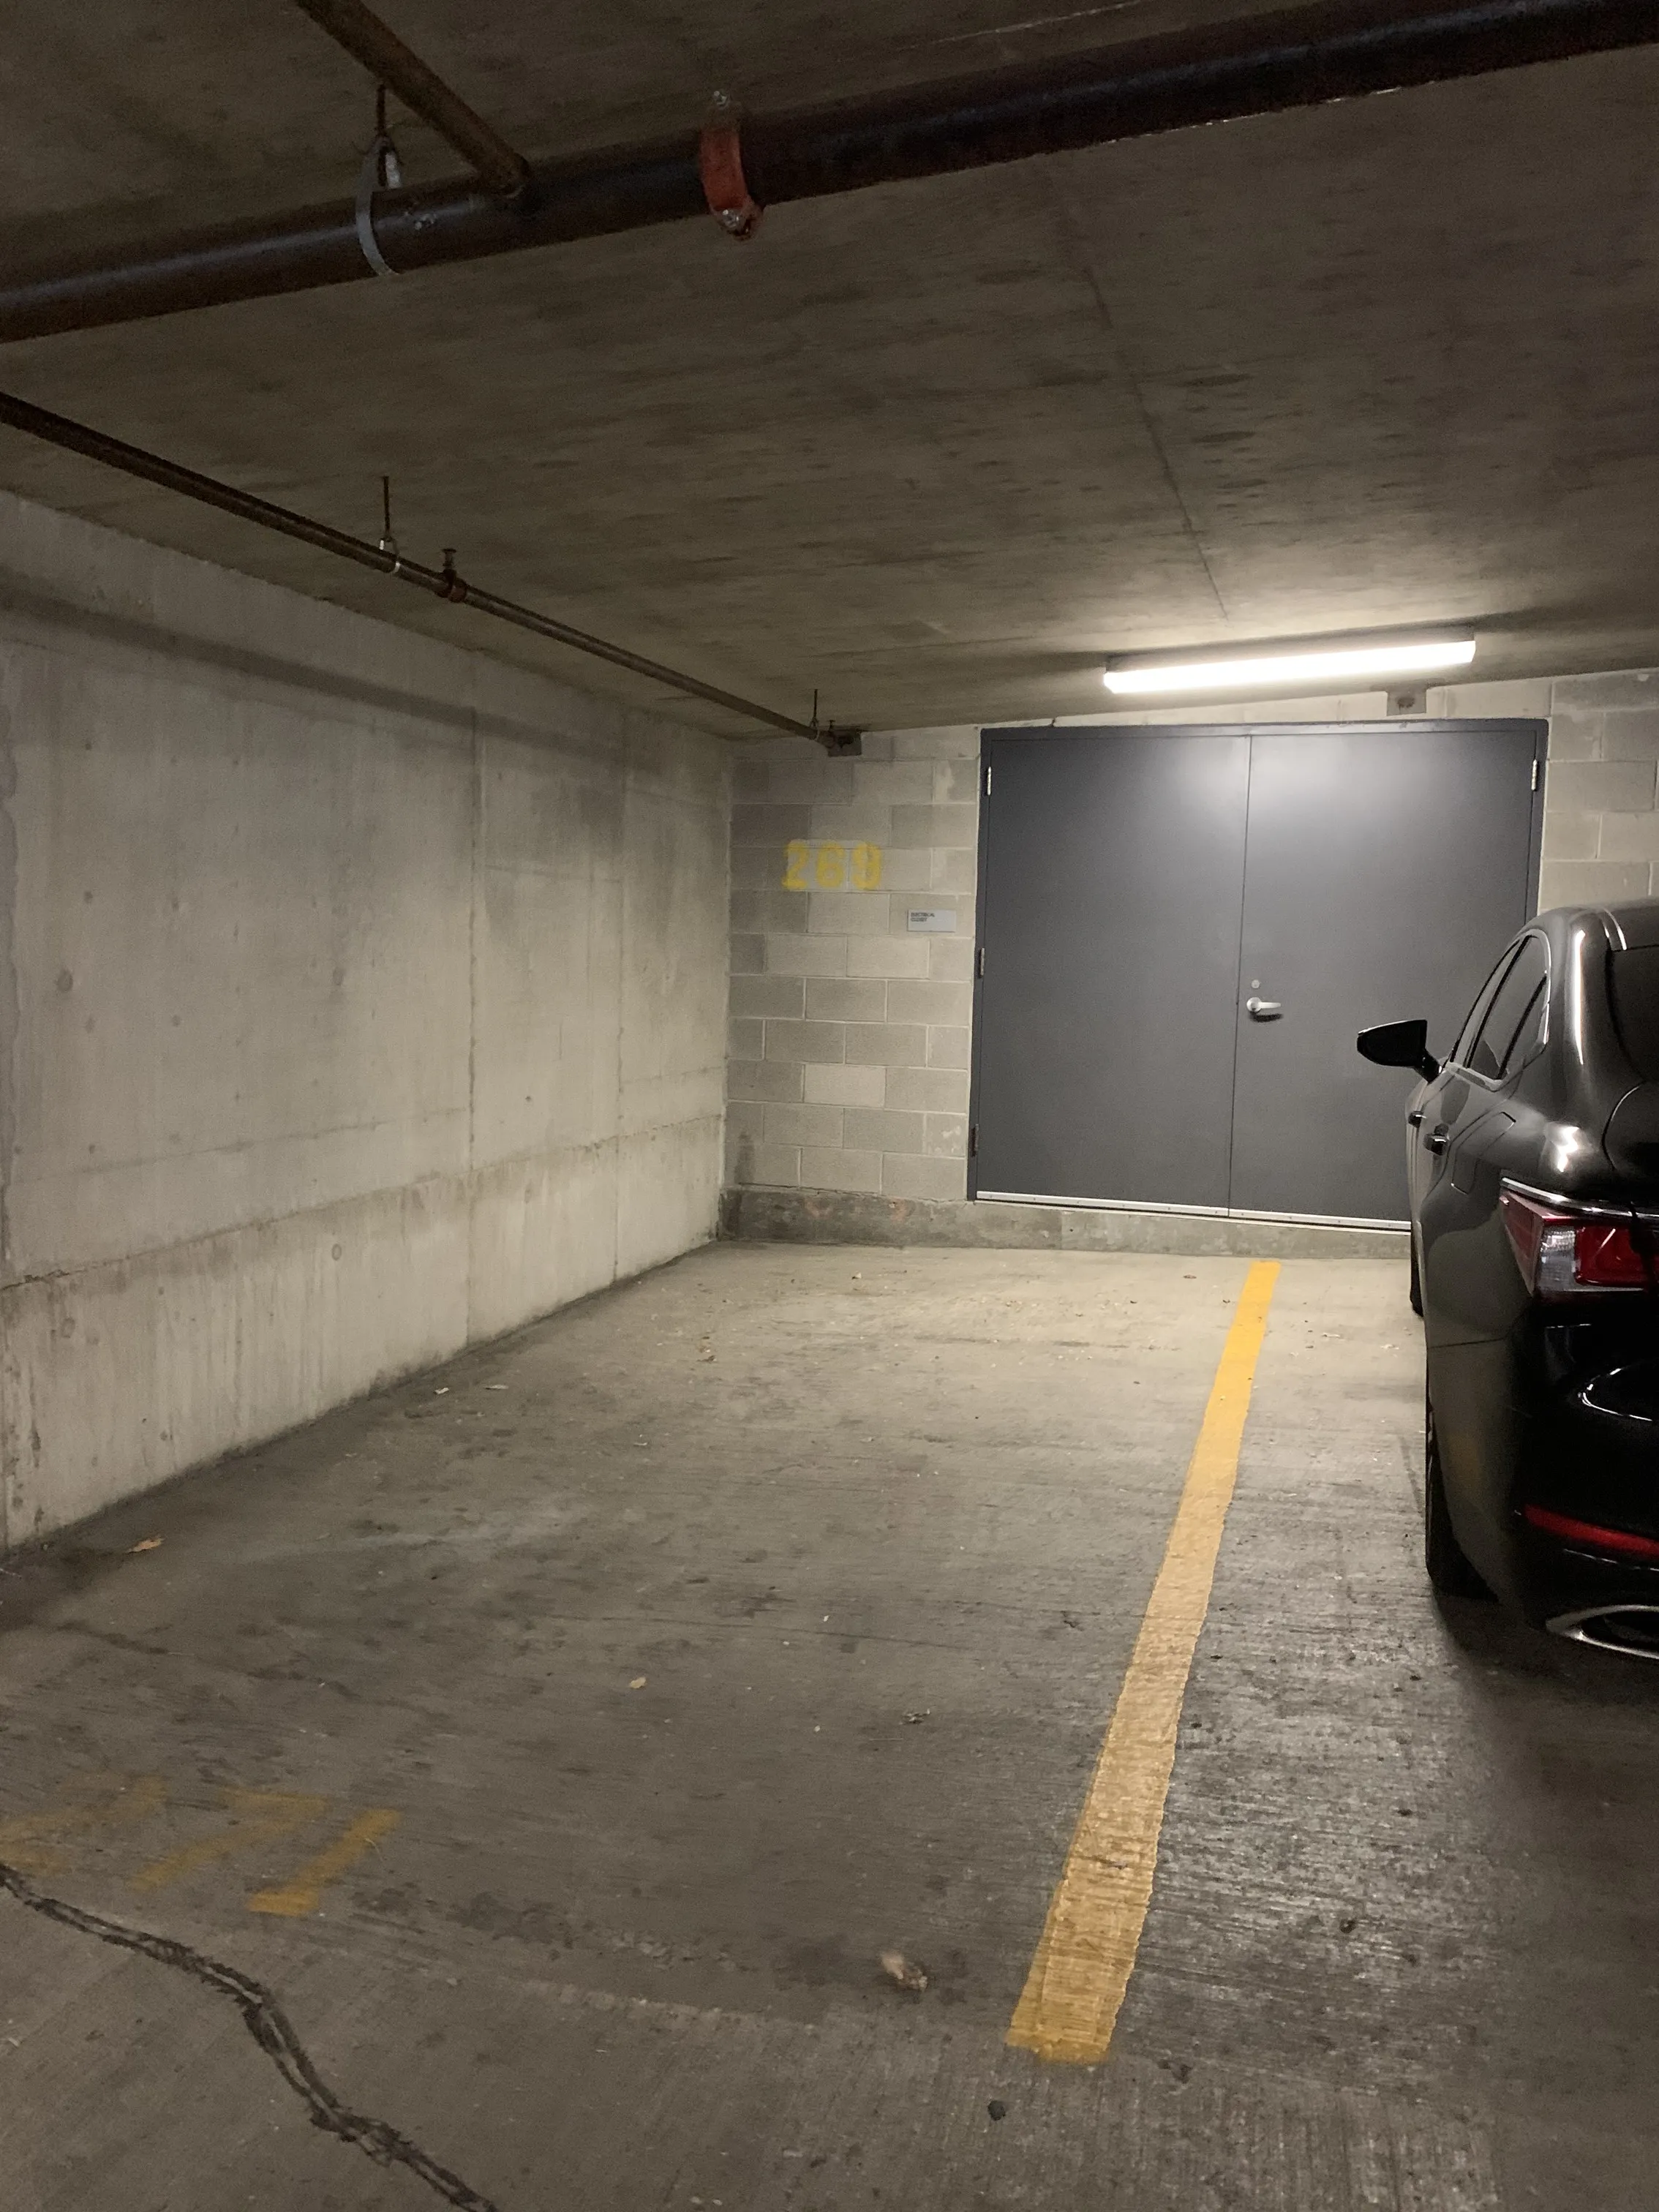 Parking, Garages And Car Spaces For Rent - Convenient Parking Space In The Loop (corner Of Van Buren & Franklin)